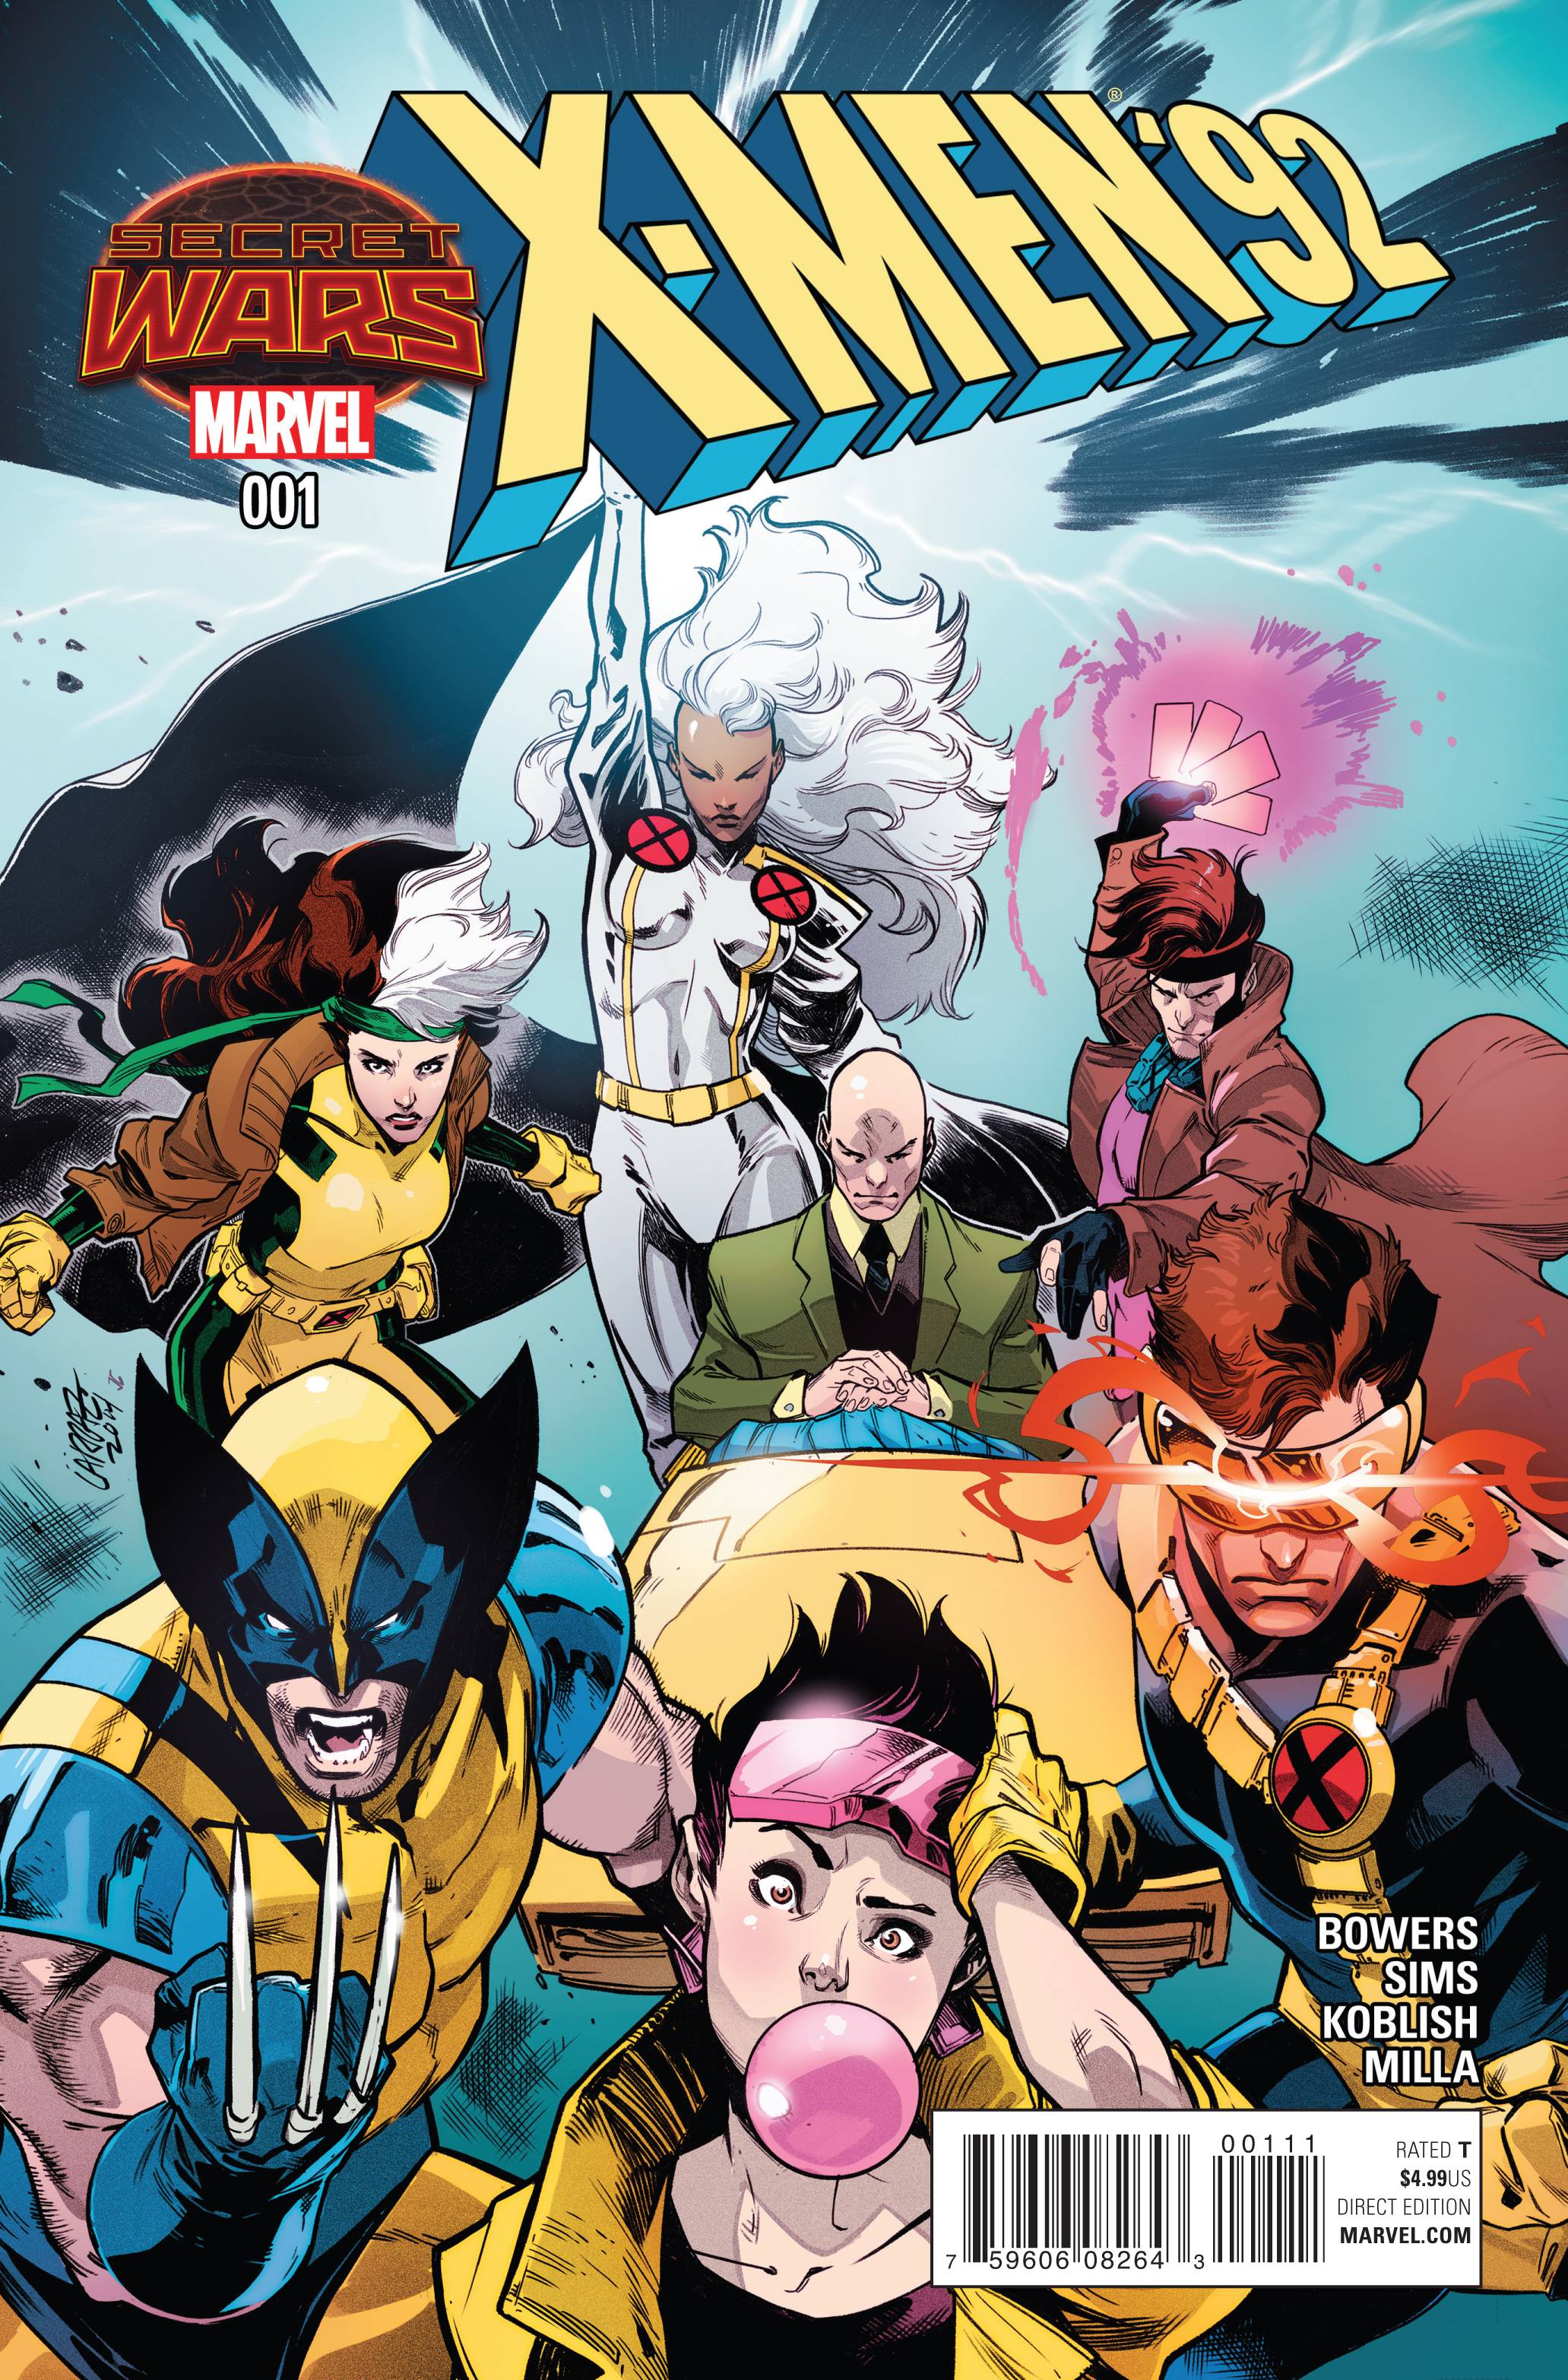 X-Men 92 no. 1